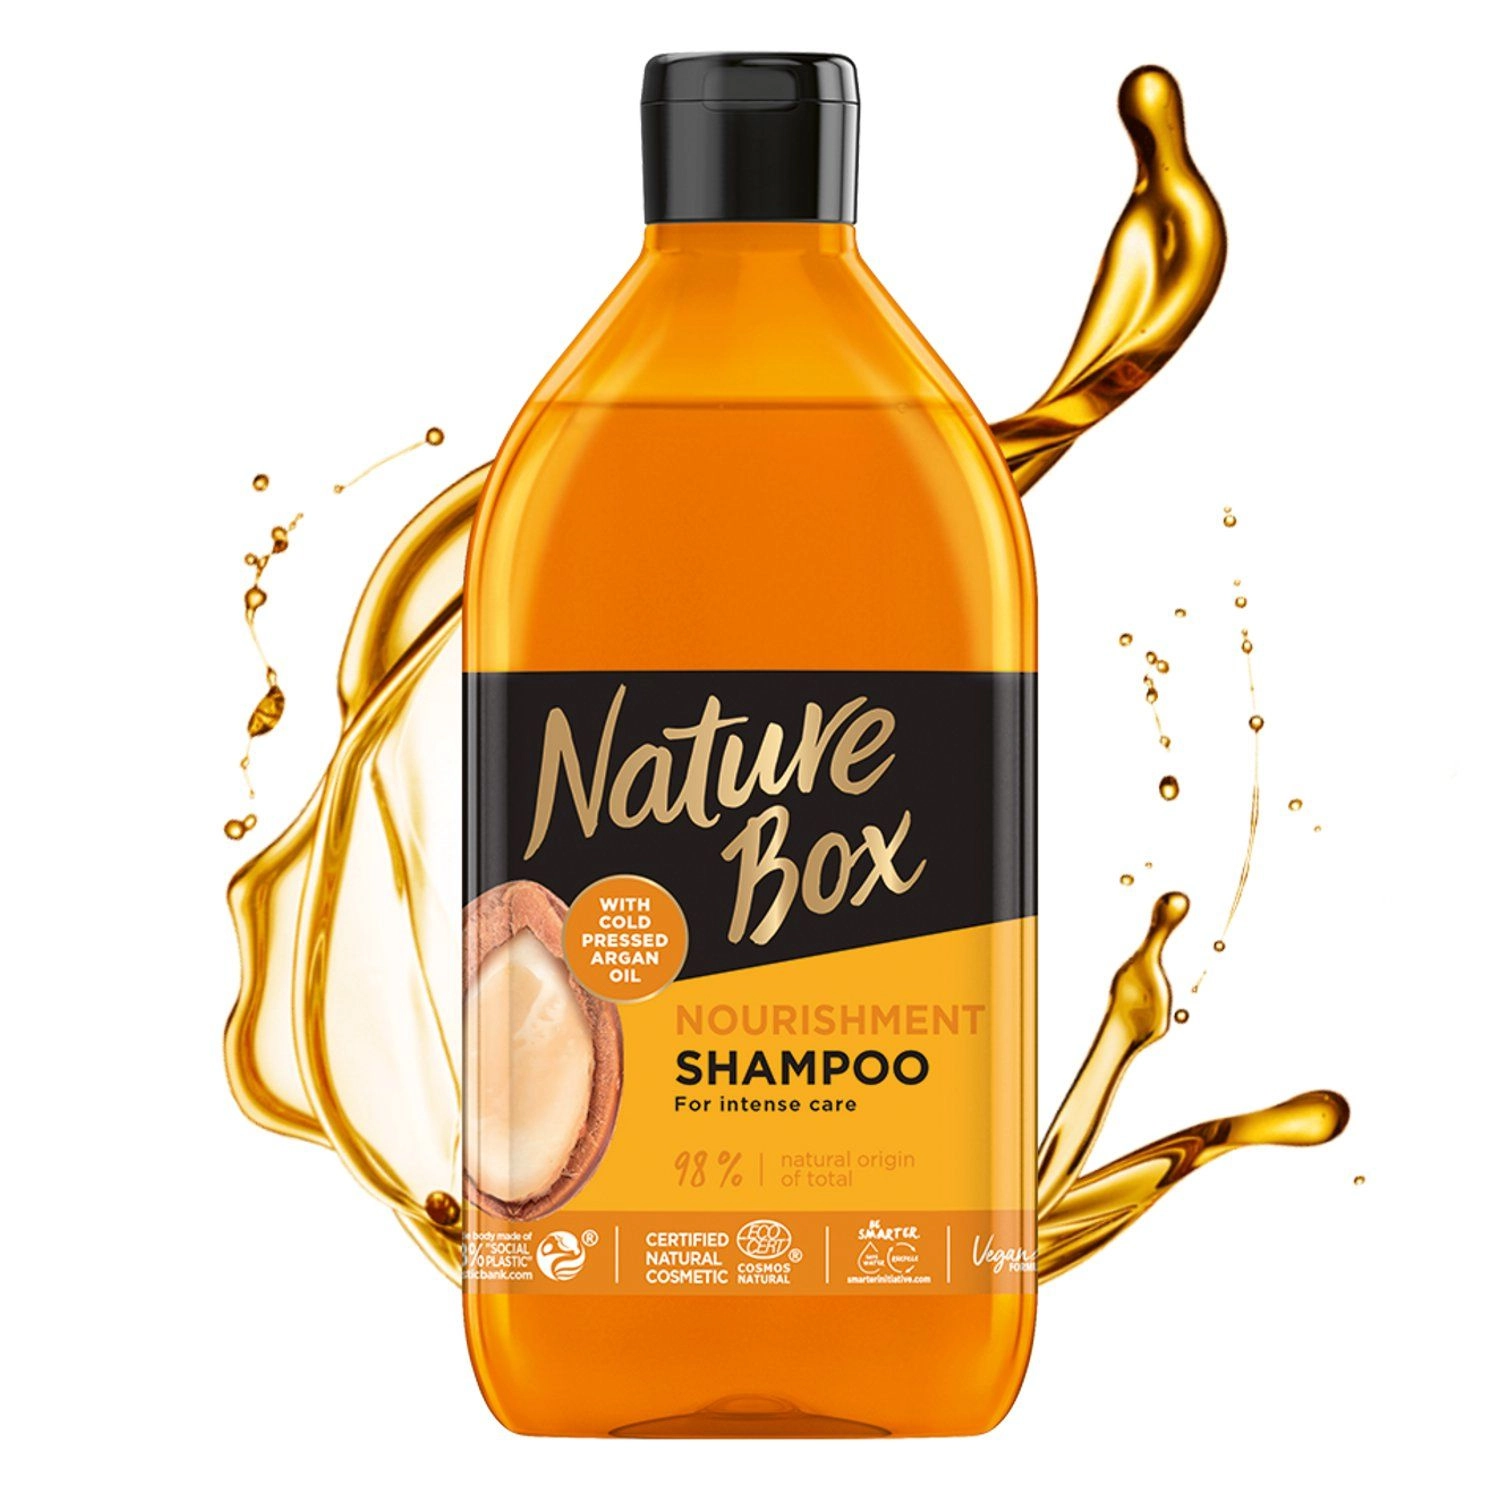 Питательный шампунь для волос с аргановым маслом холодного отжима - Nature Box Nourishment Shampoo, 385 мл - фото N3